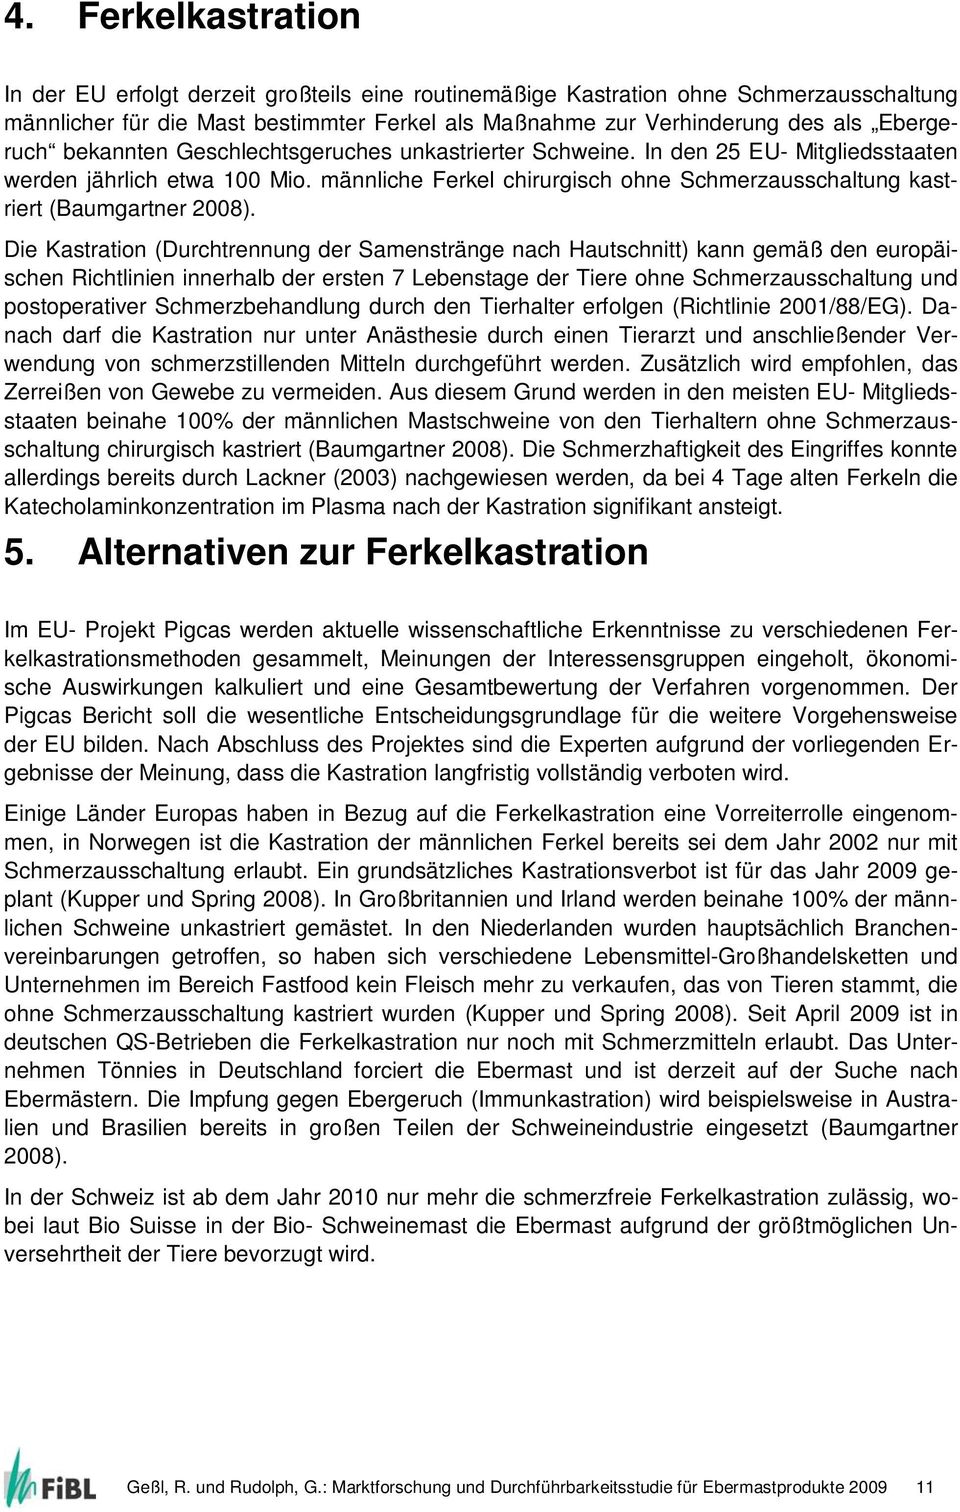 männliche Ferkel chirurgisch ohne Schmerzausschaltung kastriert (Baumgartner 2008).